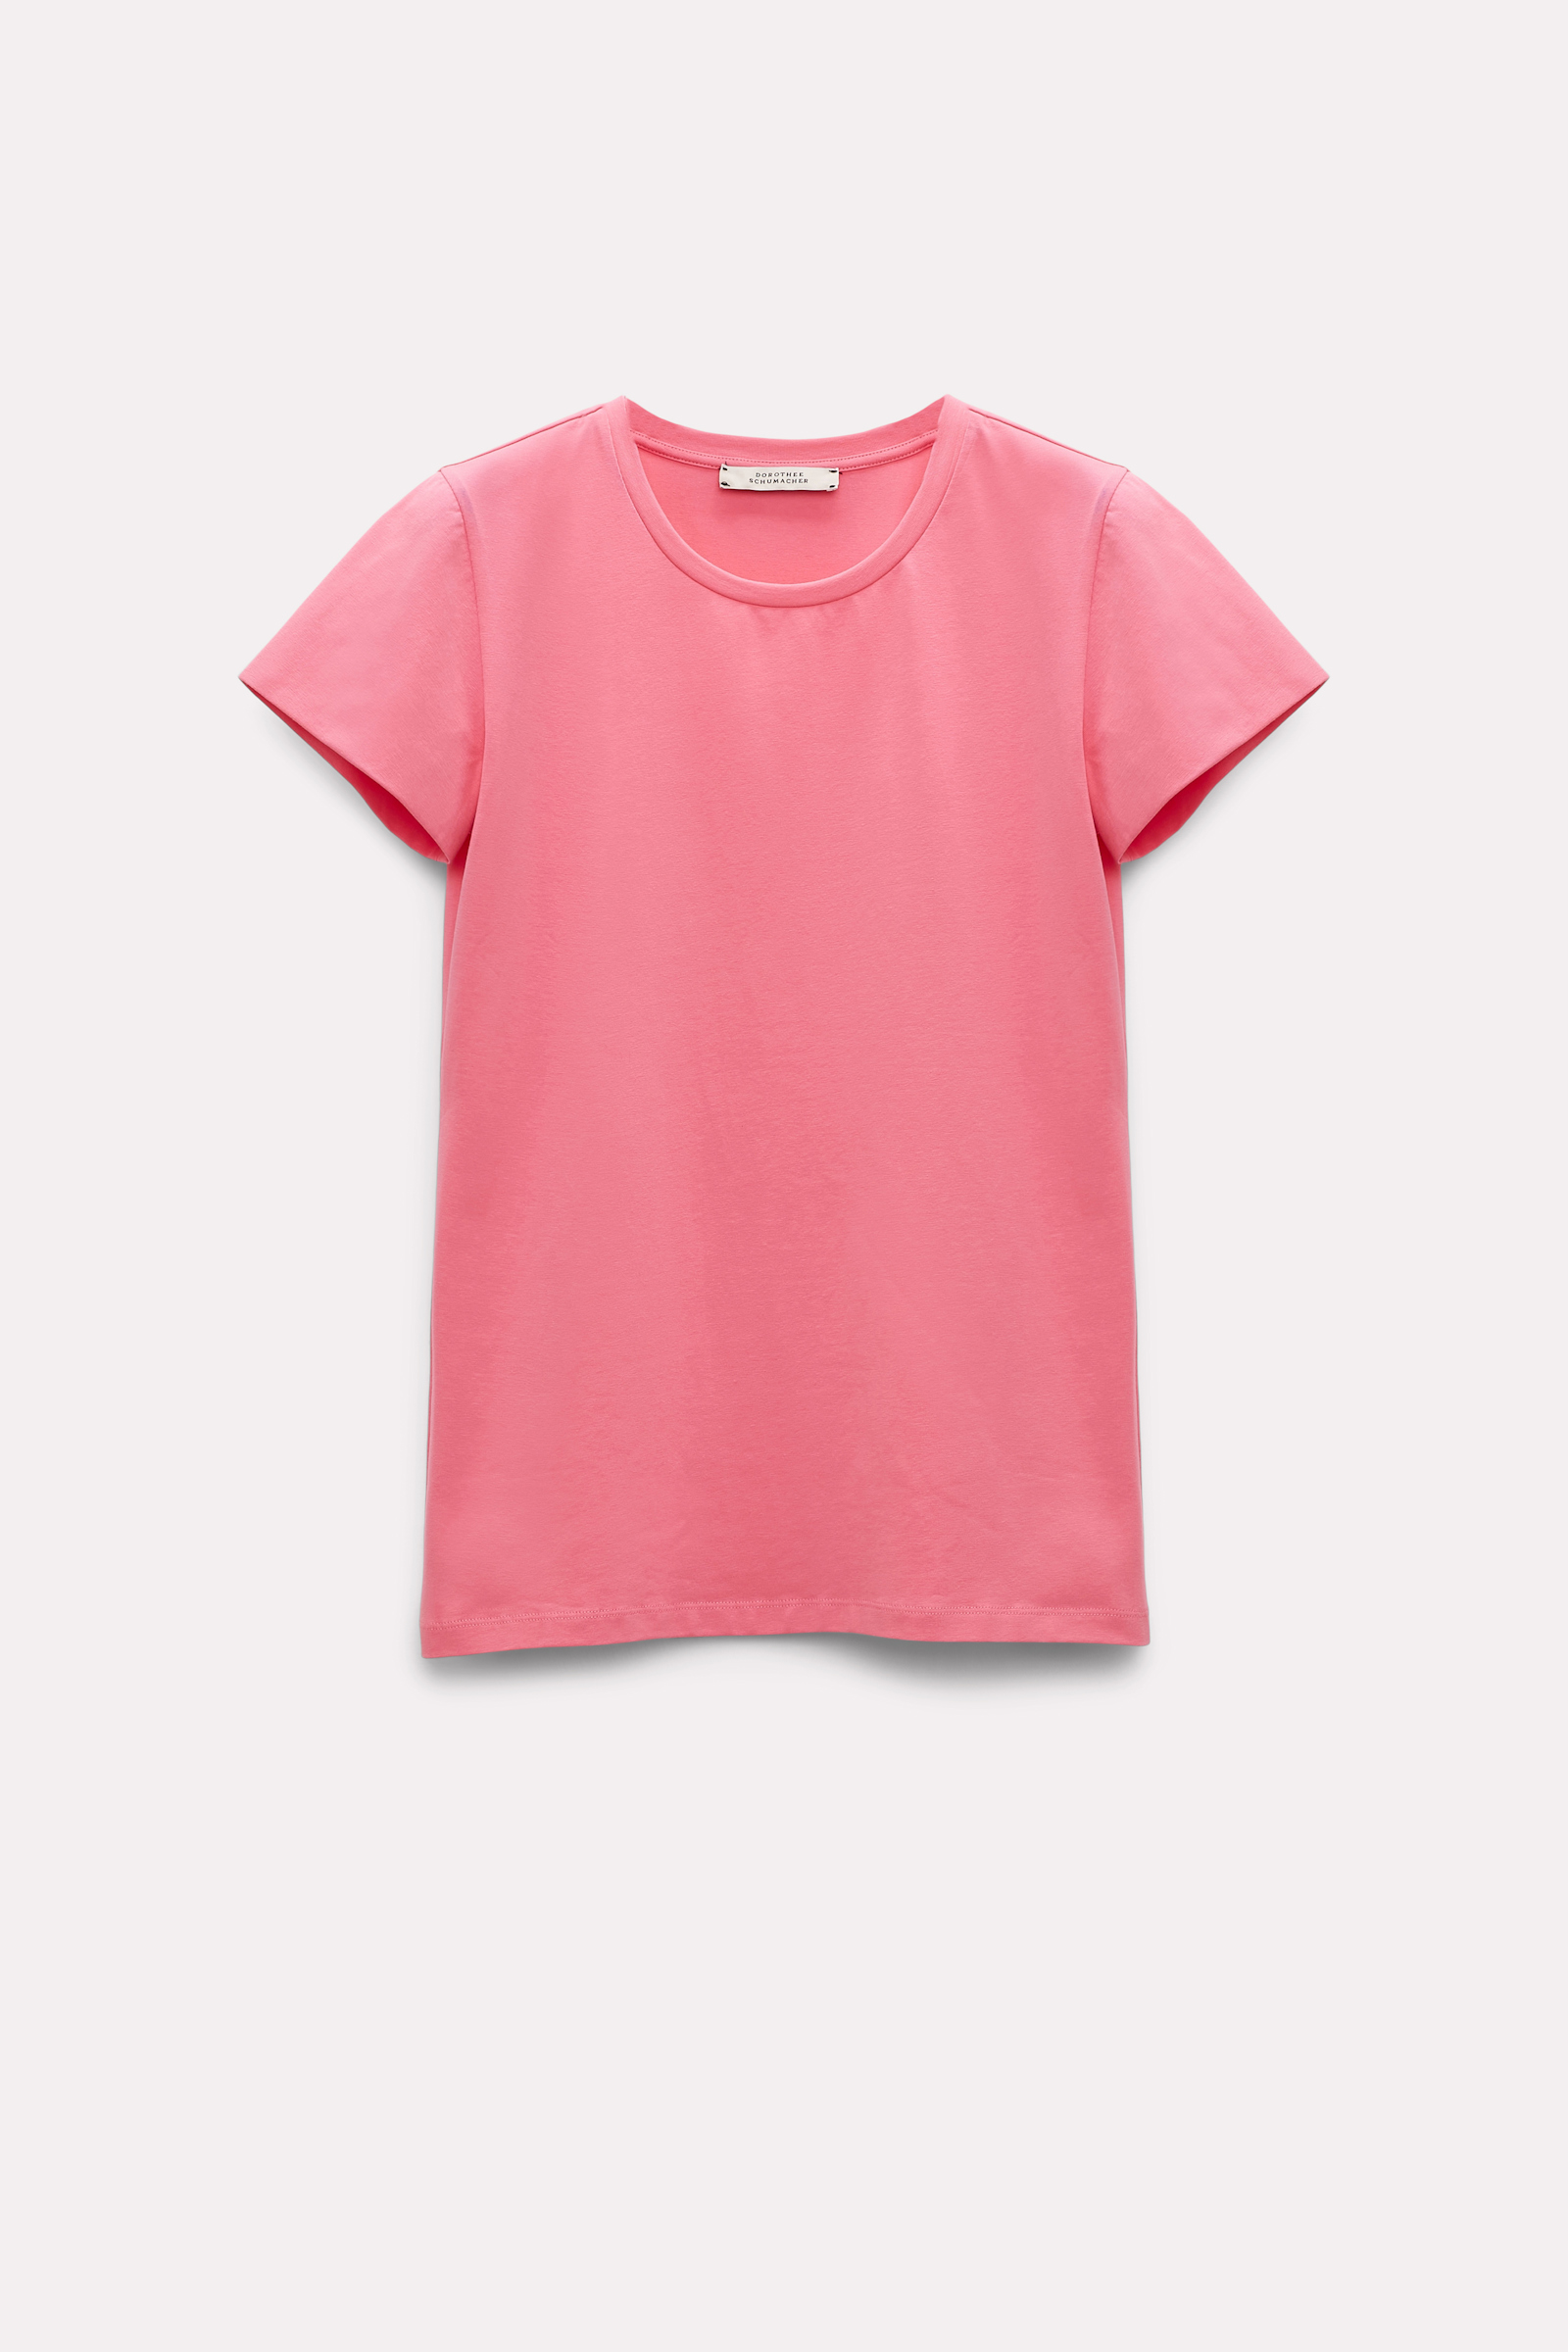 Dorothee Schumacher Basic T-Shirt bright pink